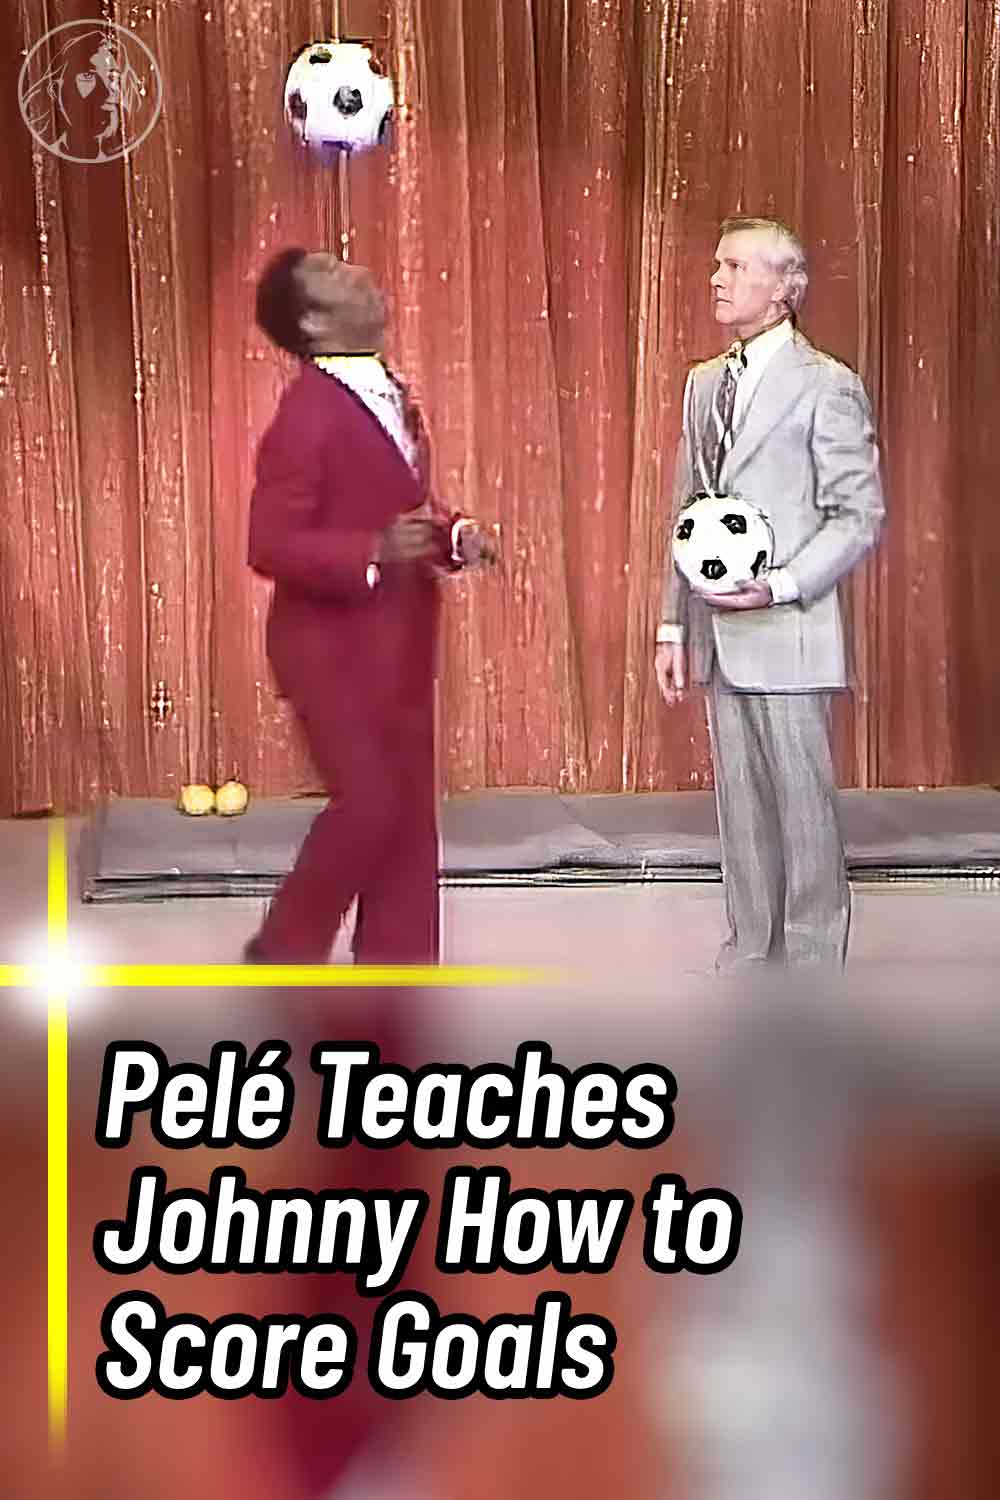 Pelé Teaches Johnny How to Score Goals